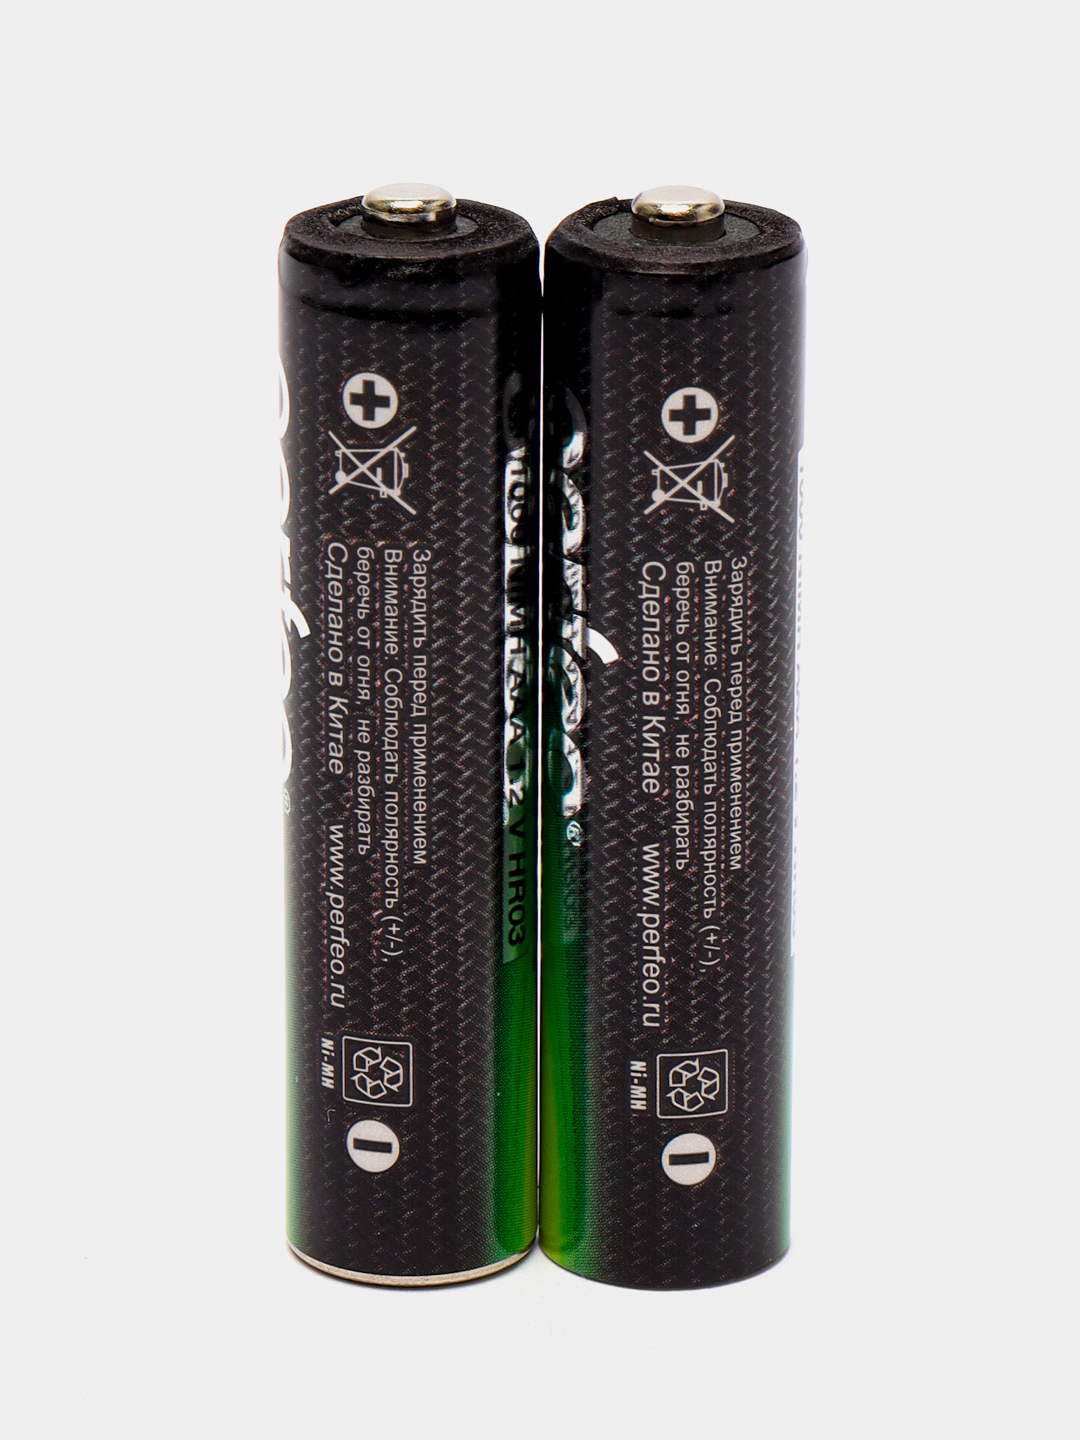 Аккумуляторы ААА Perfeo Ni-MH, мизинчиковые аккумуляторные батарейки .